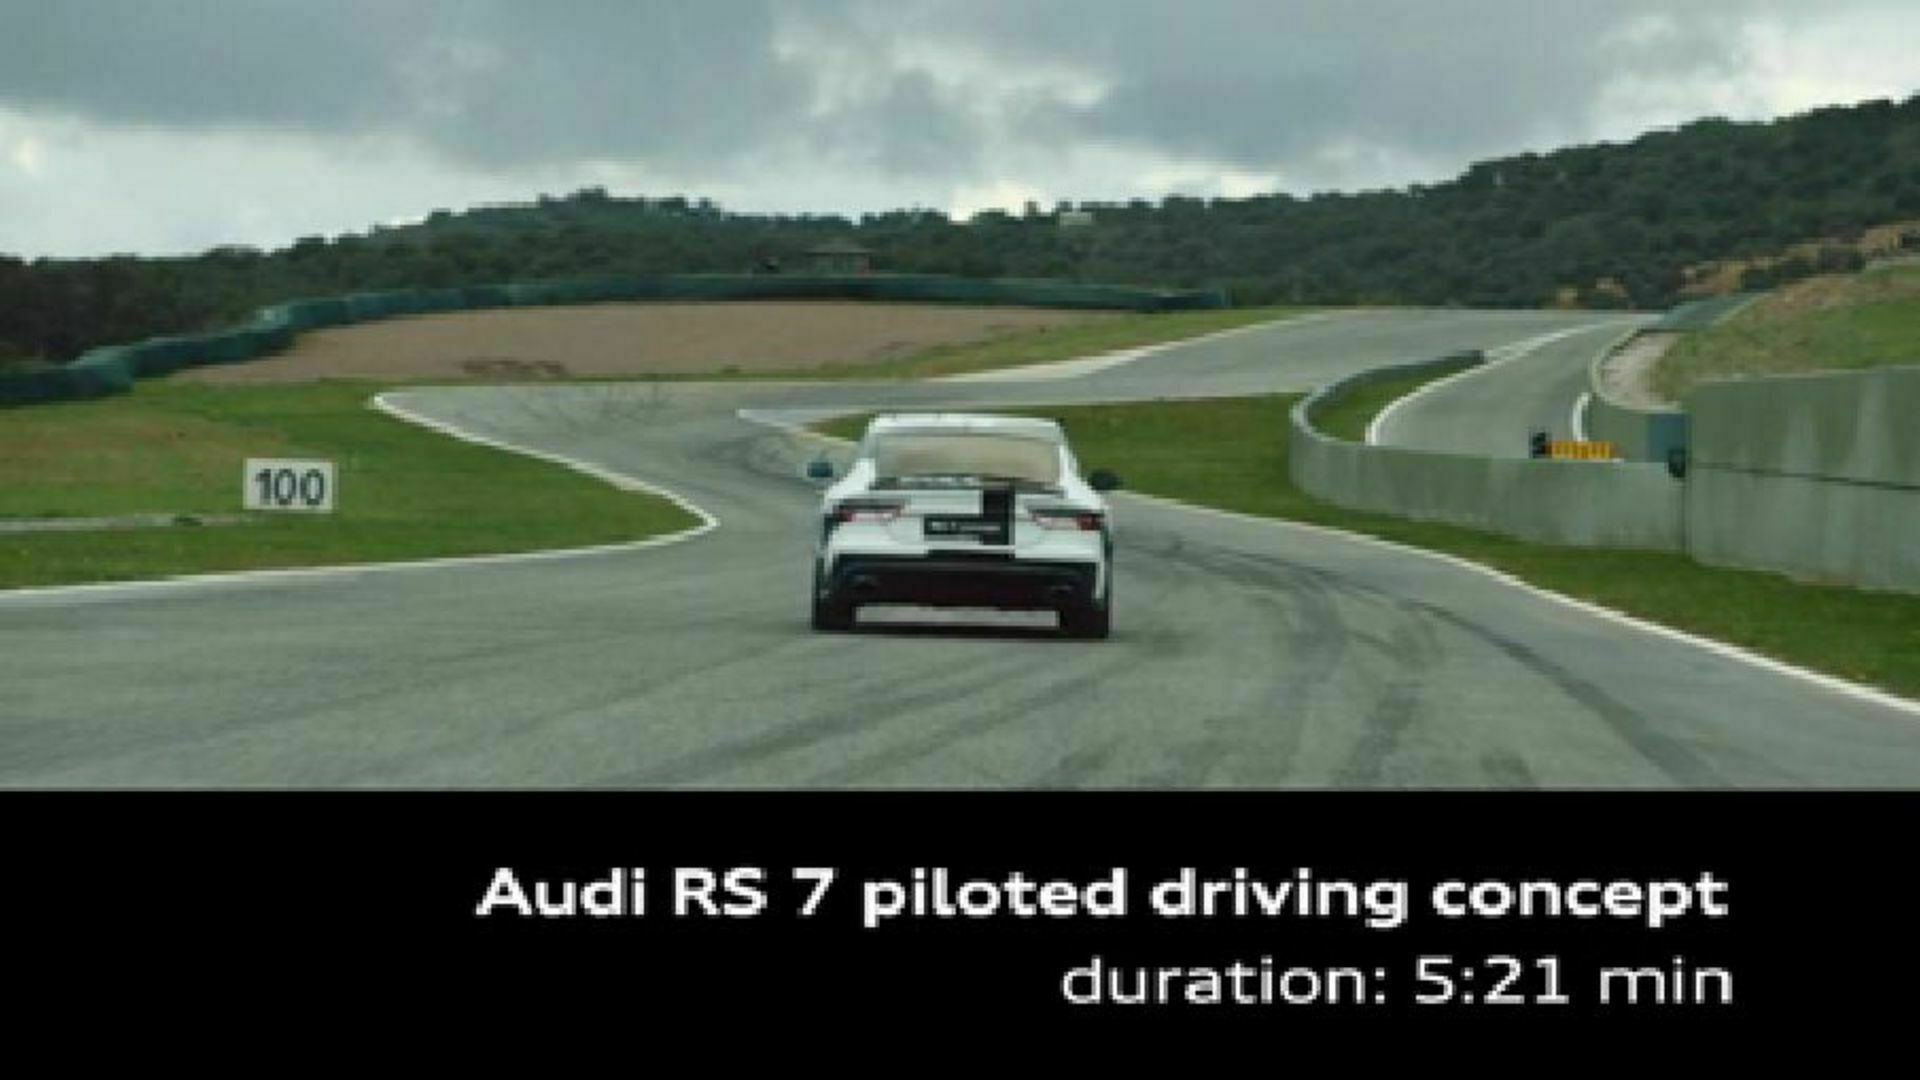 Der Audi RS 7 piloted driving concept auf der Rennstrecke